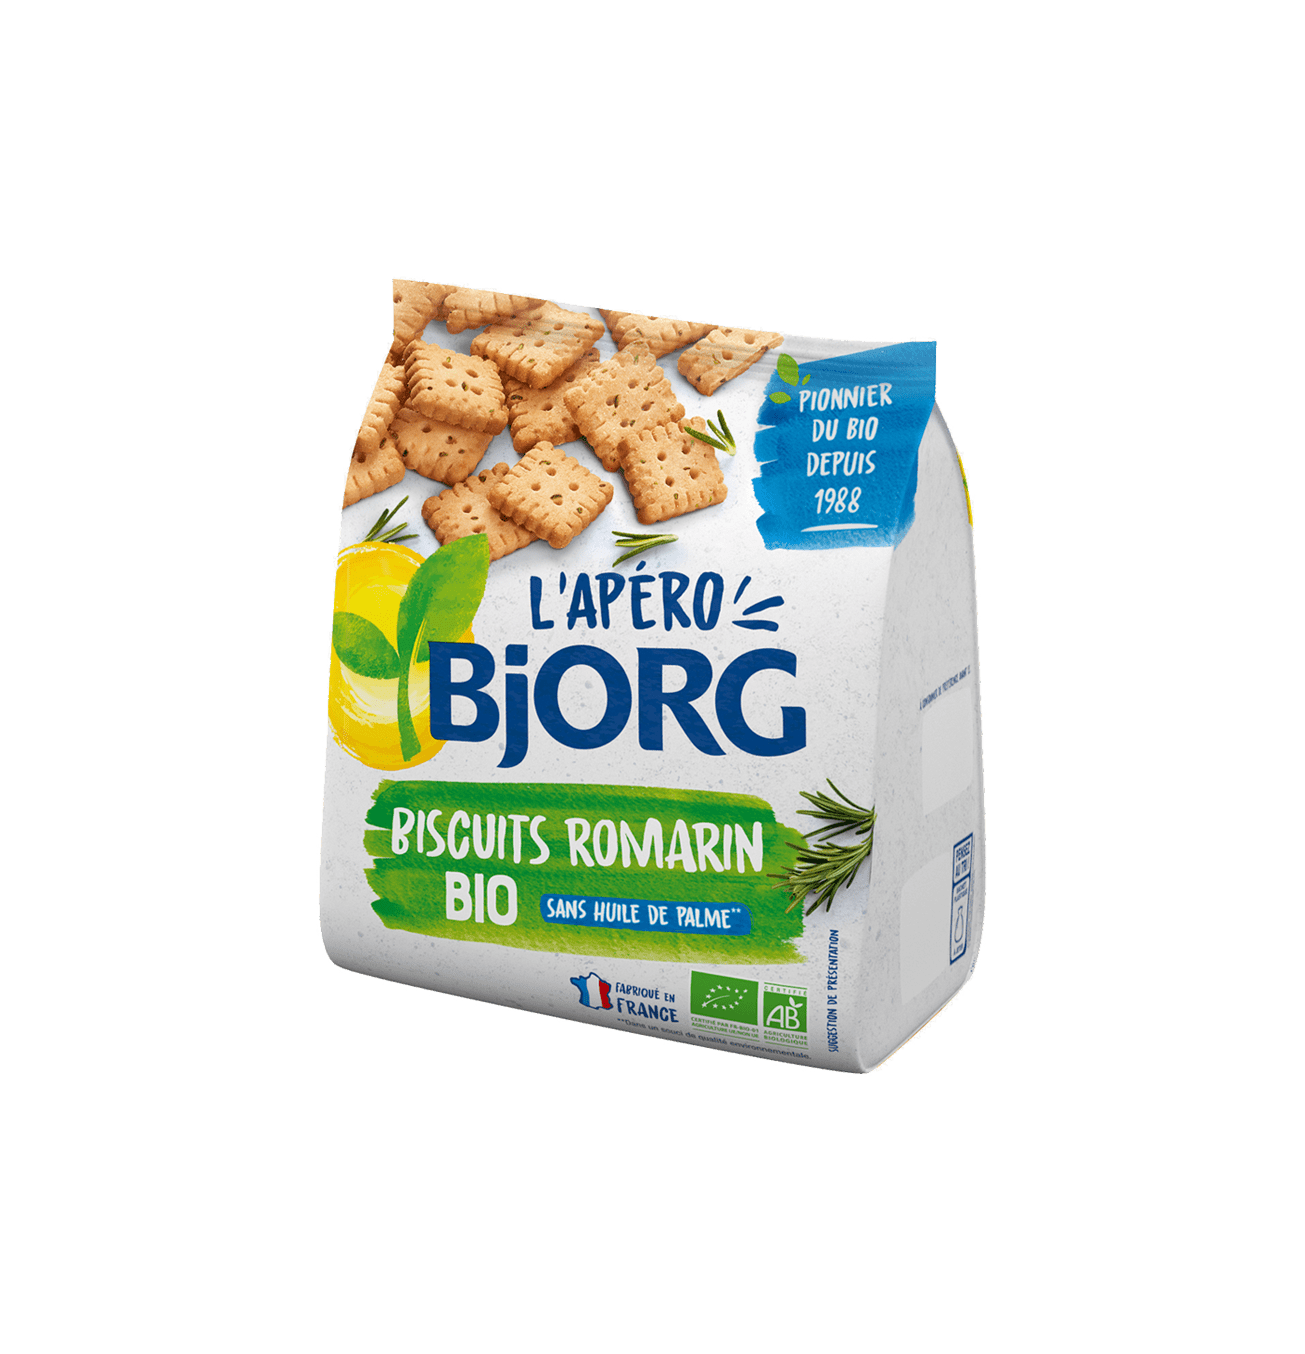 Biscuits Romarin Bio Bjorg 